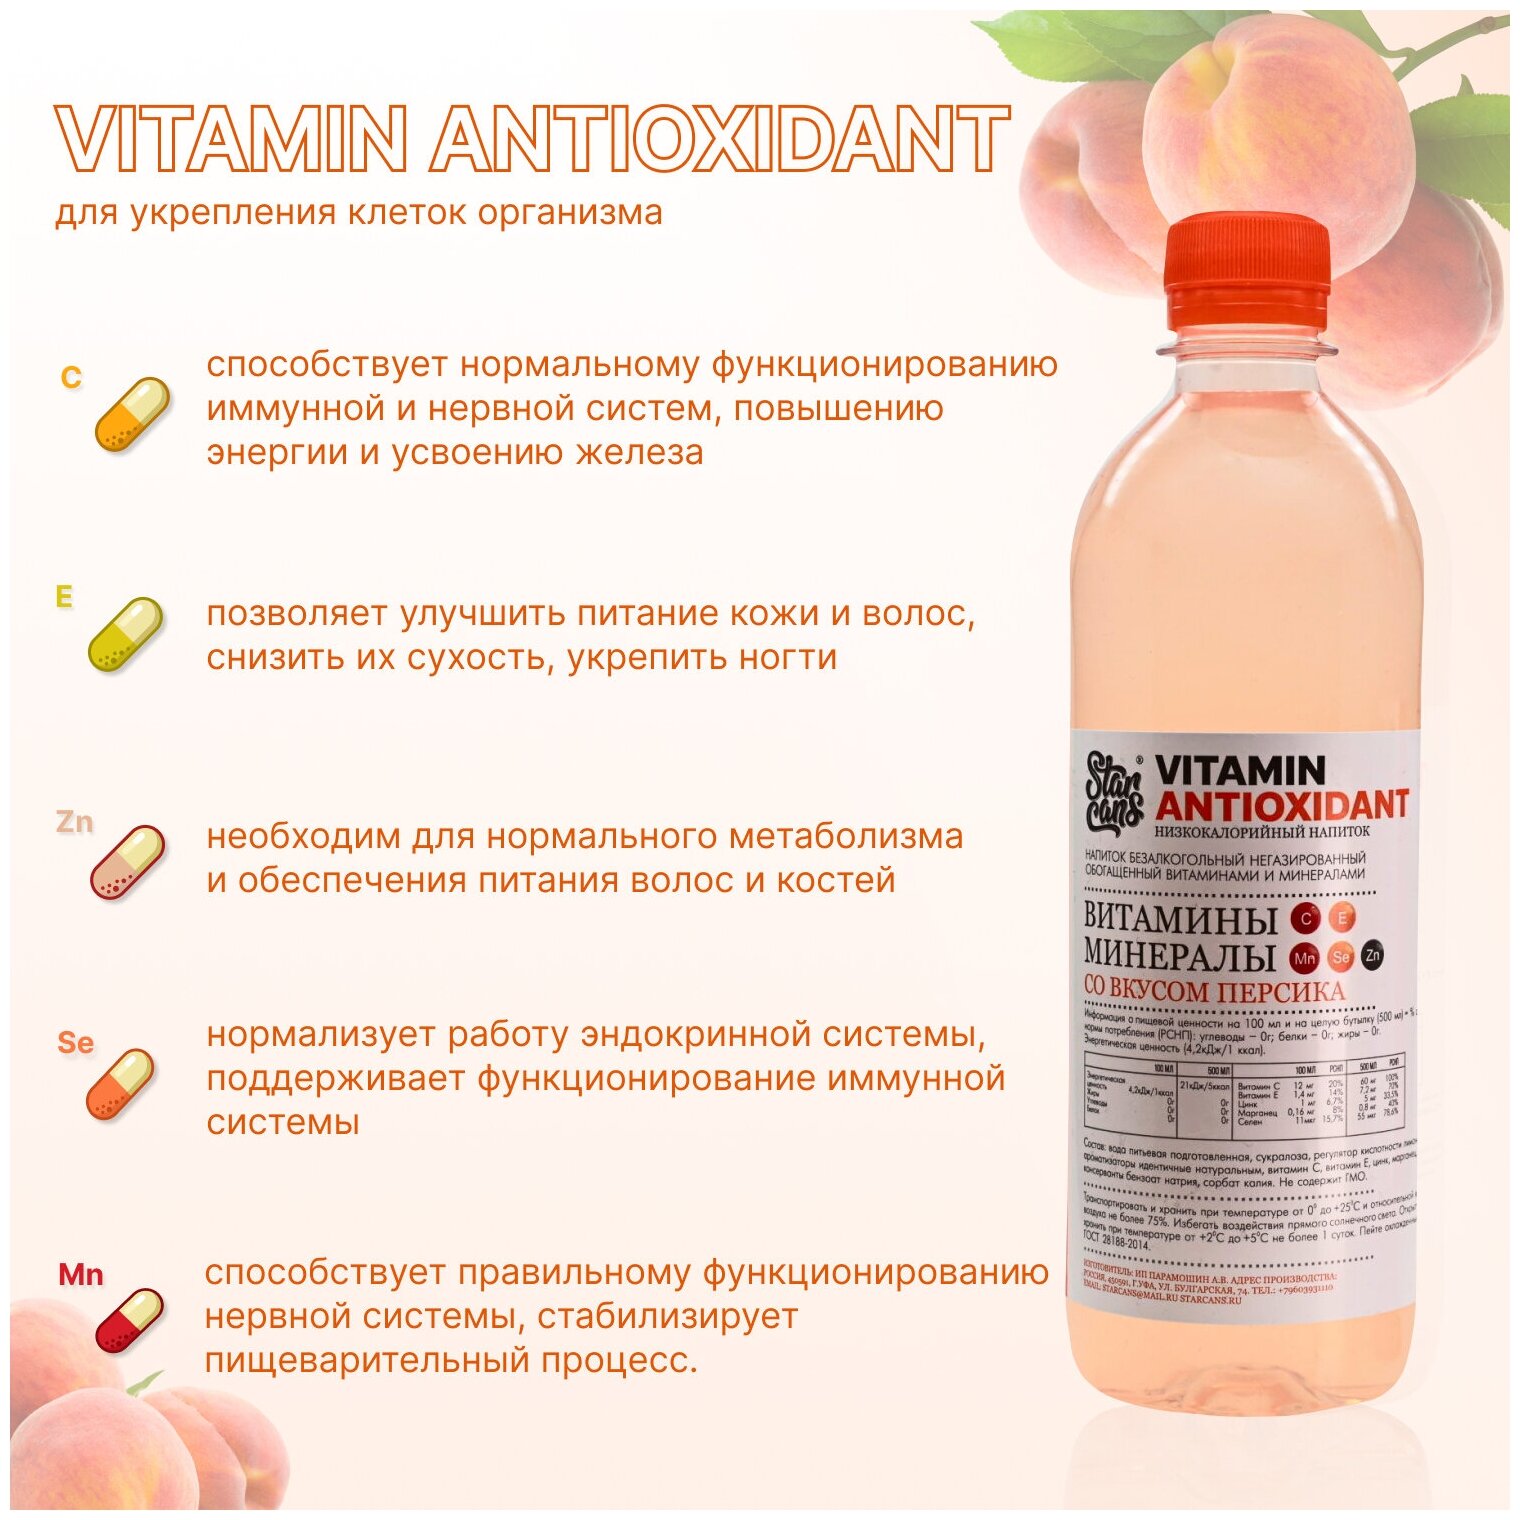 Vitamin ANTIOXIDANT Напиток витаминизированный со вкусом Персика негазированный низкокалорийный 24 шт по 500 мл - фотография № 2